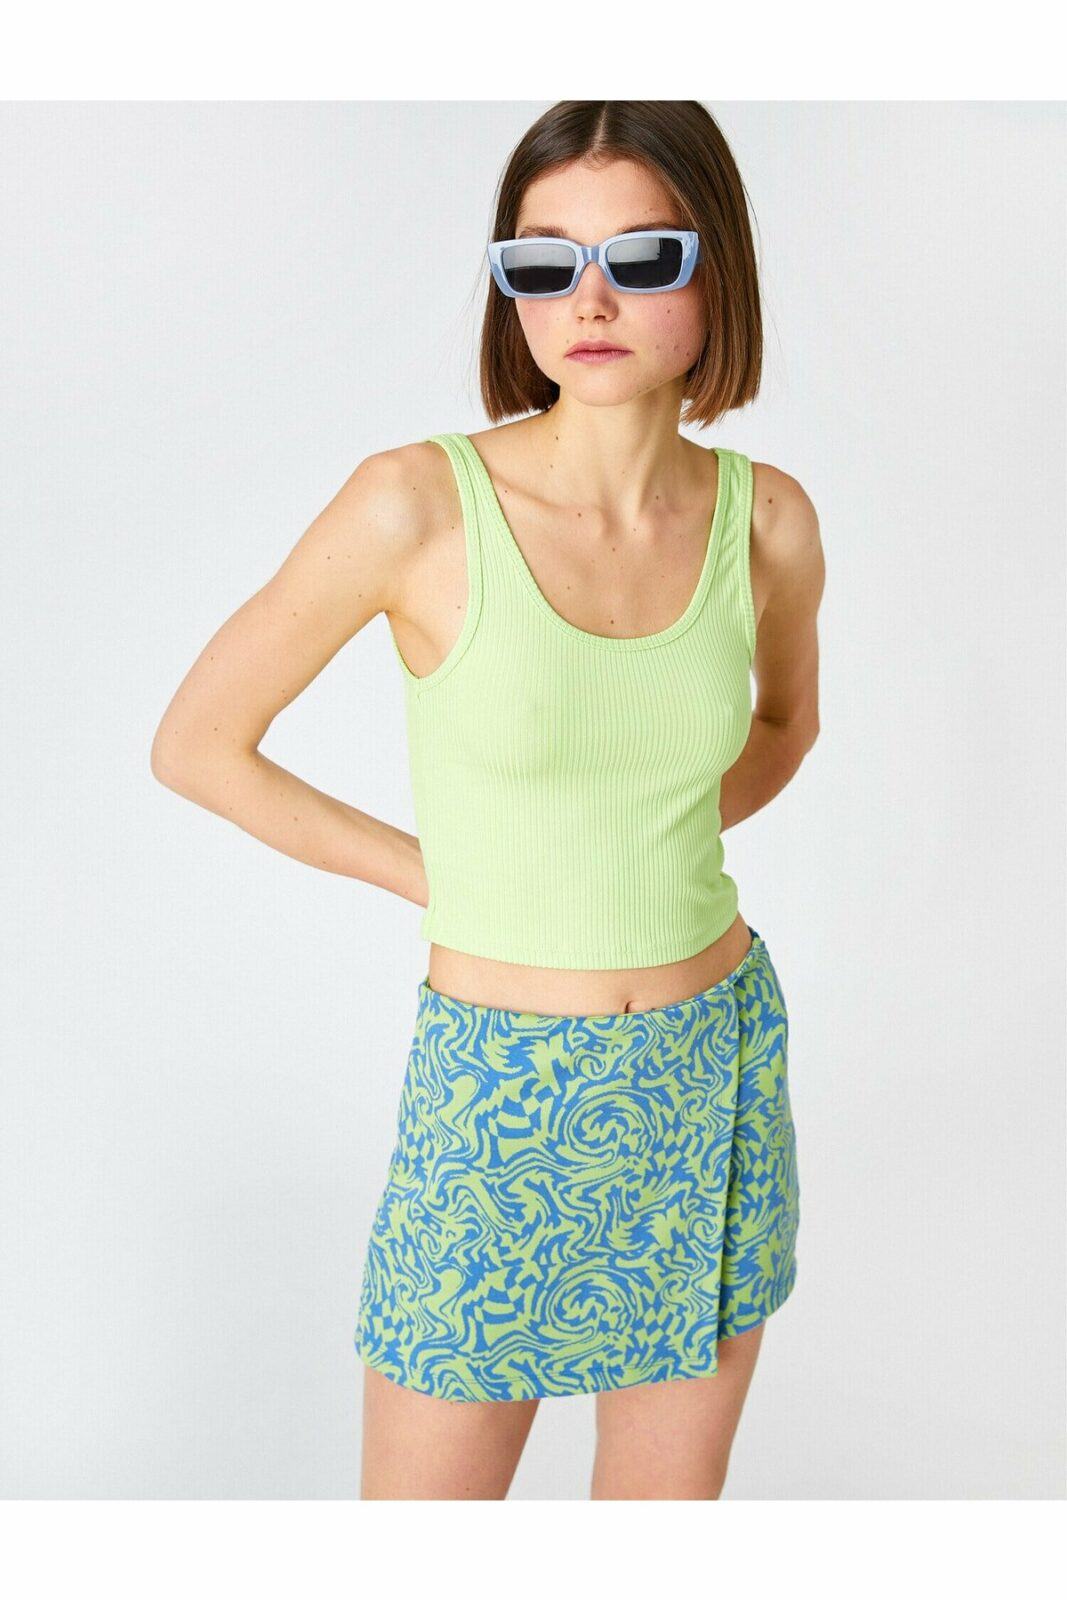 Koton Skirt - Green